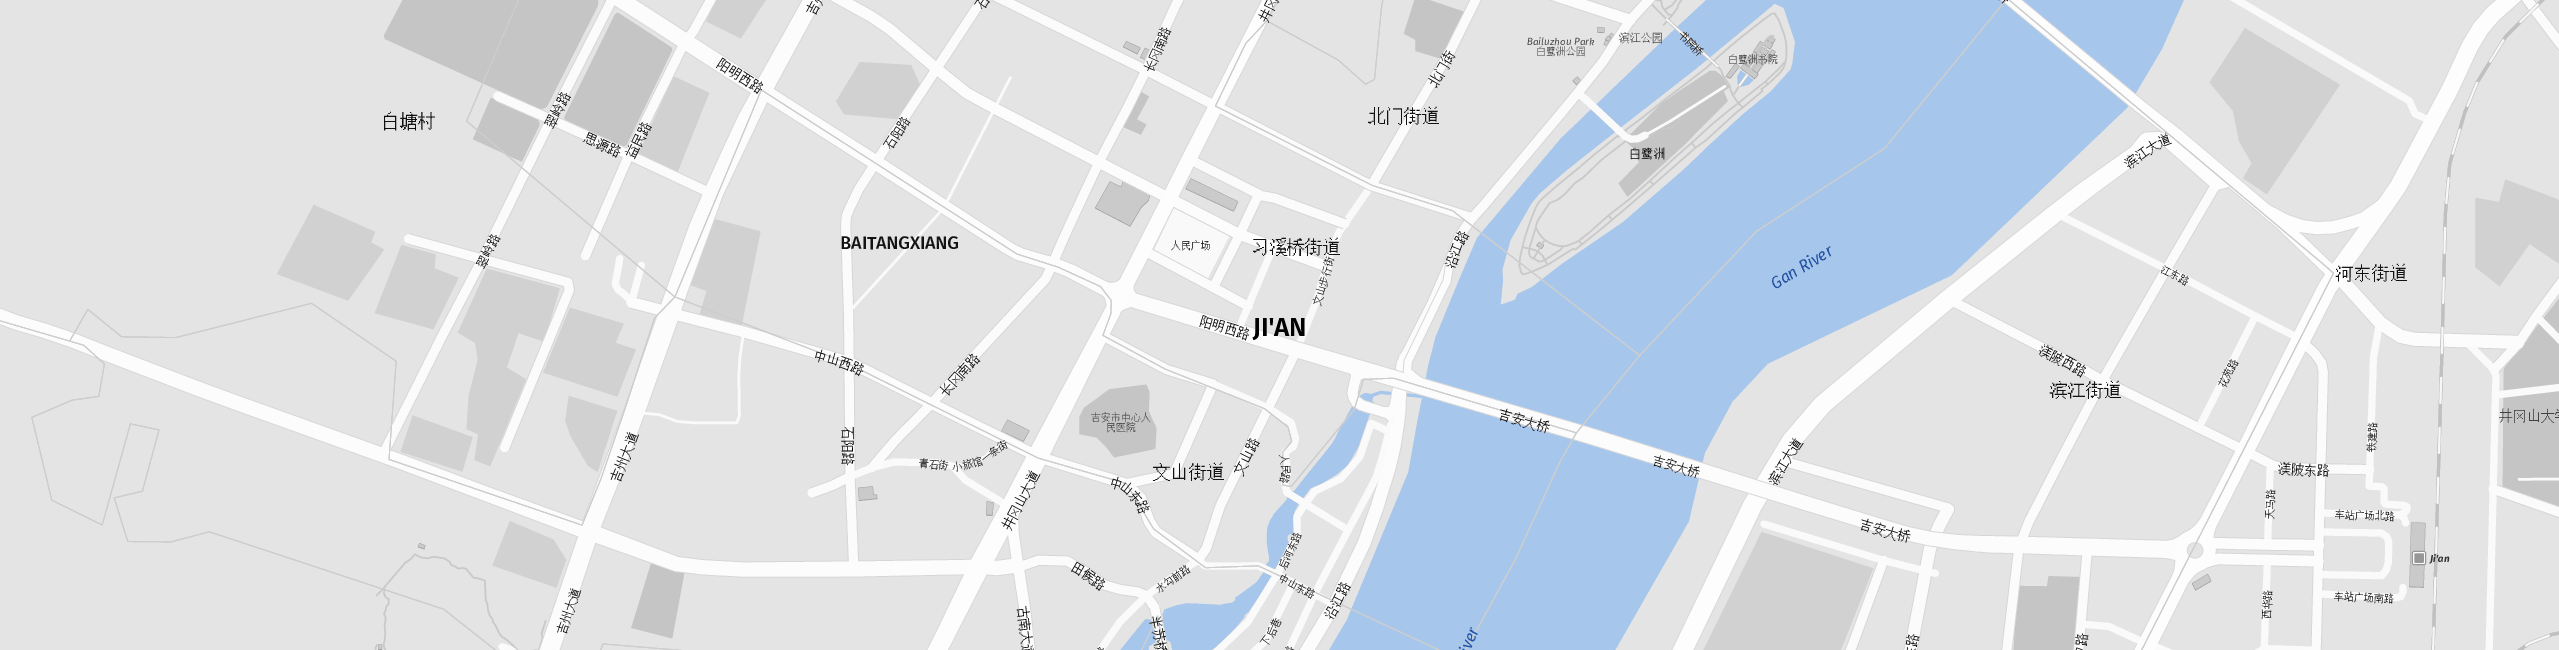 Stadtplan Ji'an zum Downloaden.